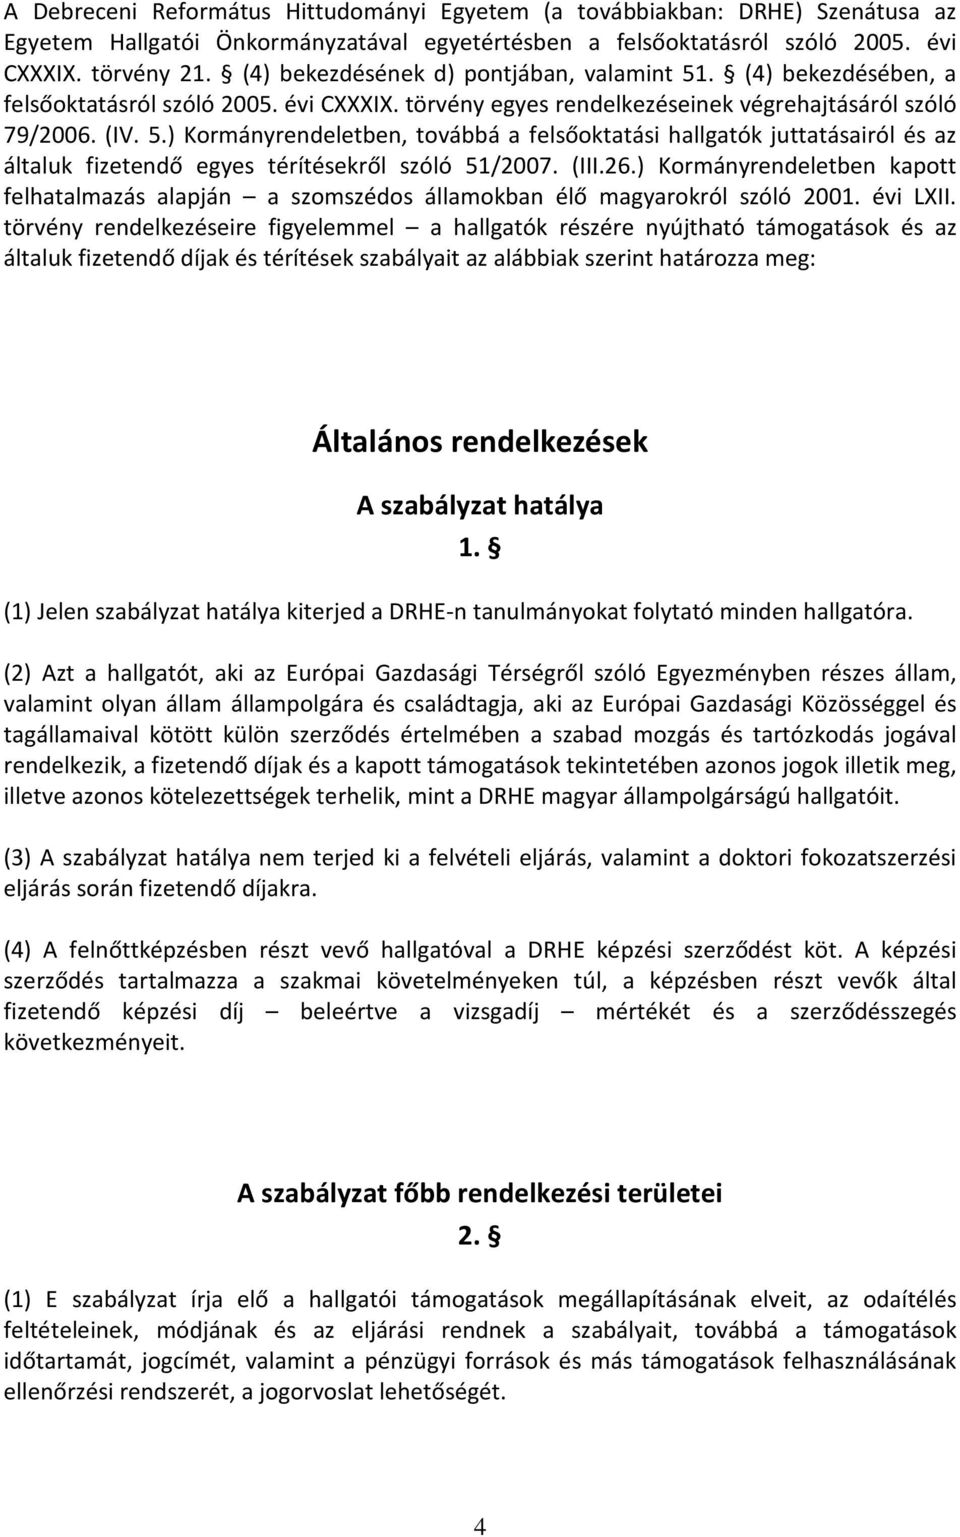 (III.26.) Kormányrendeletben kapott felhatalmazás alapján a szomszédos államokban élő magyarokról szóló 2001. évi LXII.